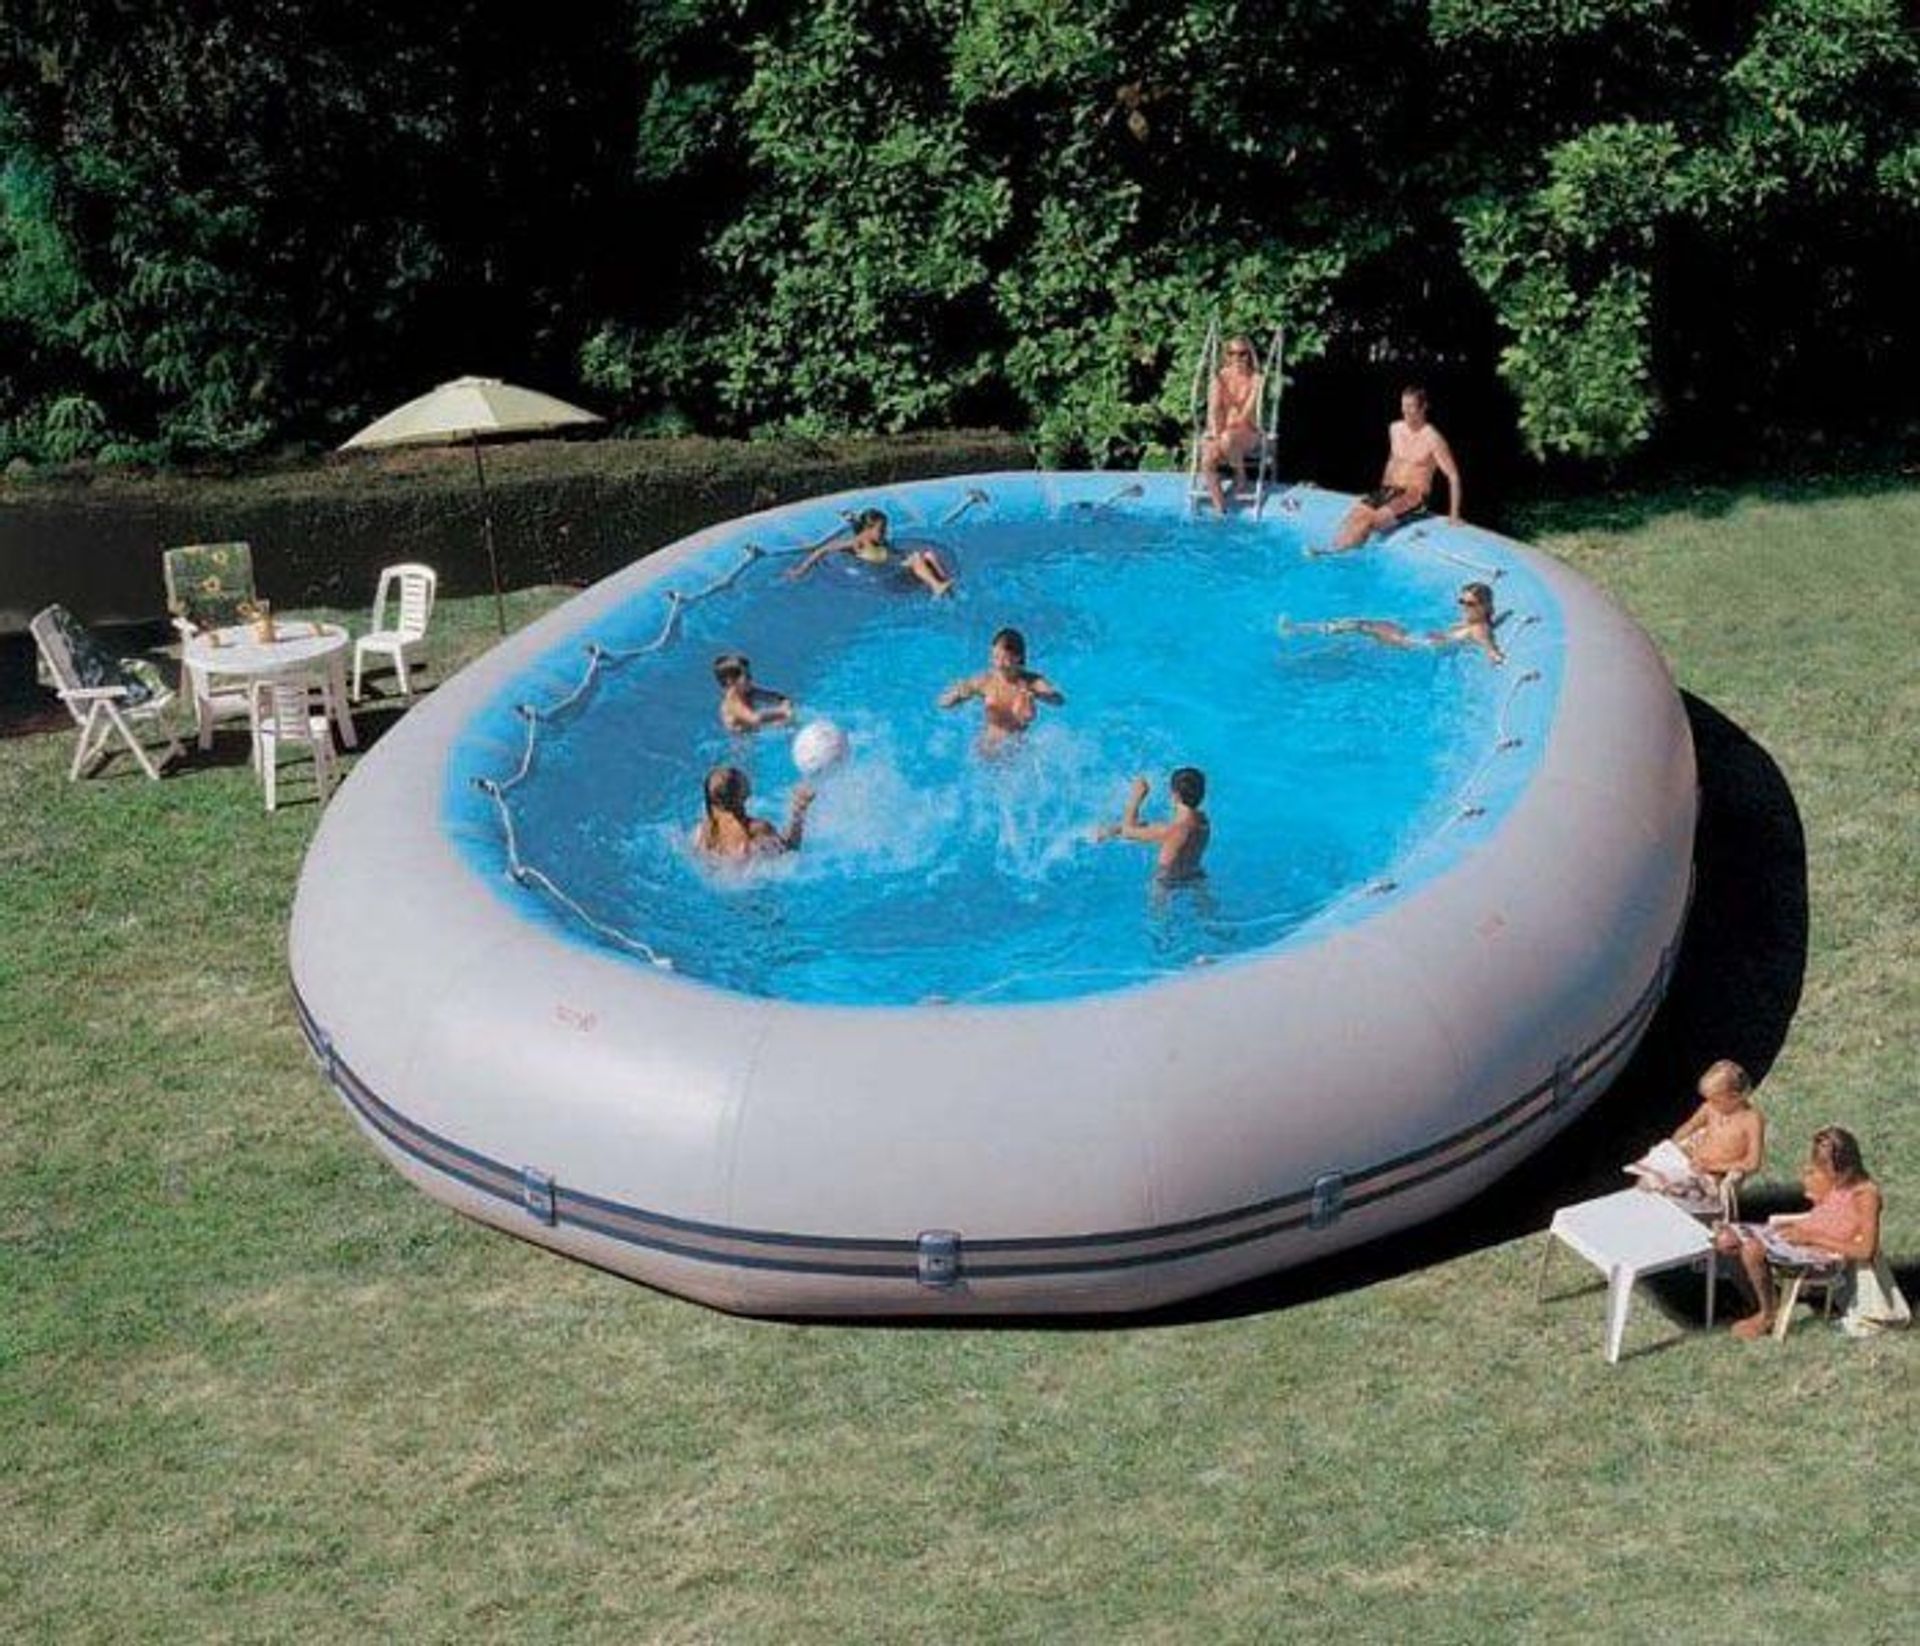 kanker Slot een kopje Met dit gigantisch opblaasbare zwembad mis jij het op vakantie gaan niet